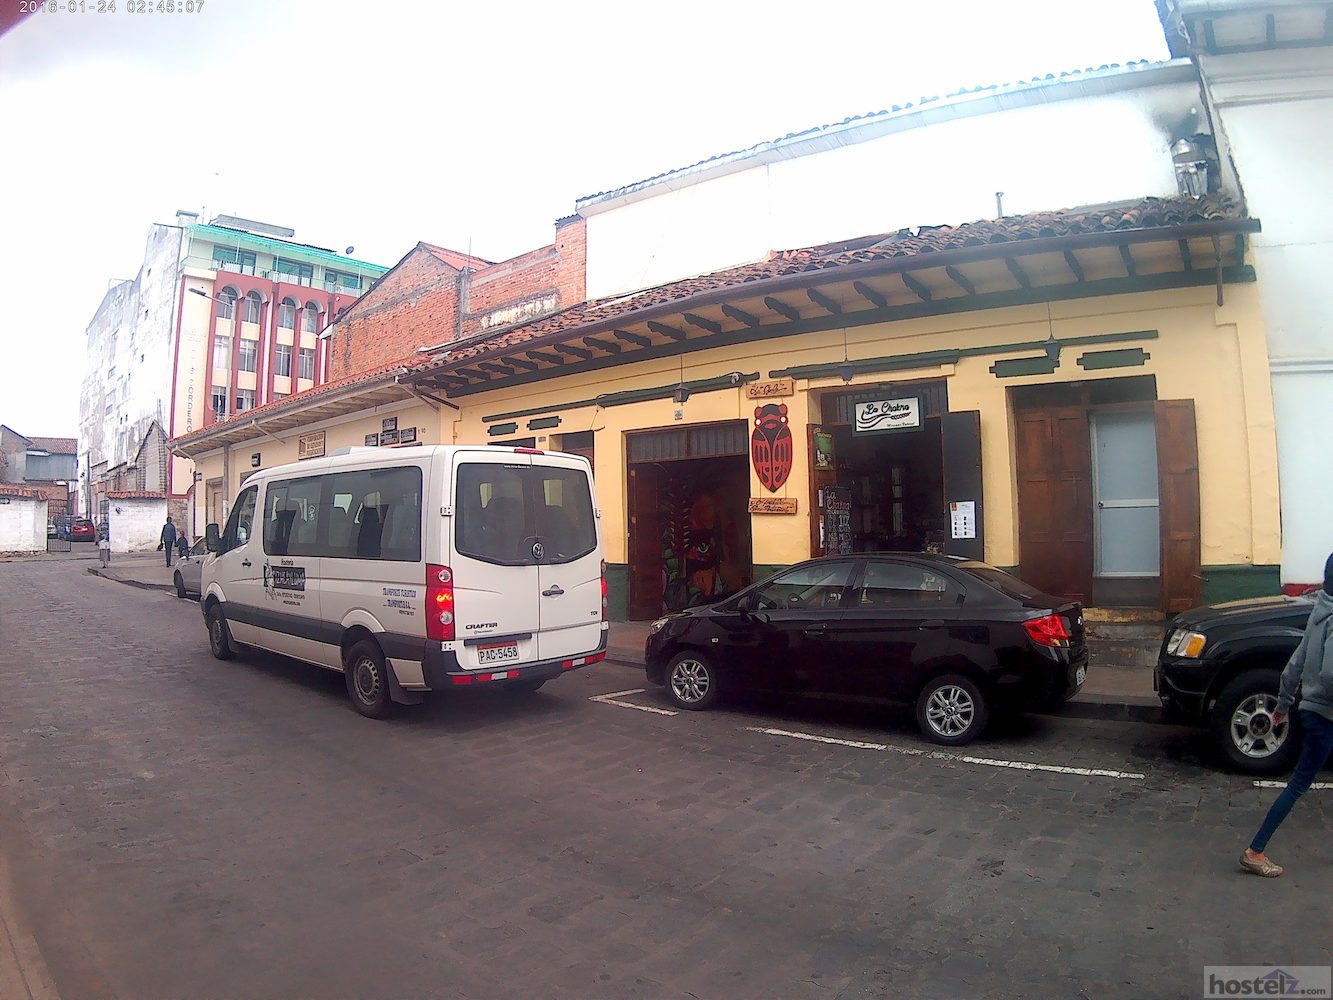 Hostal Restaurant La Cigale, Cuenca